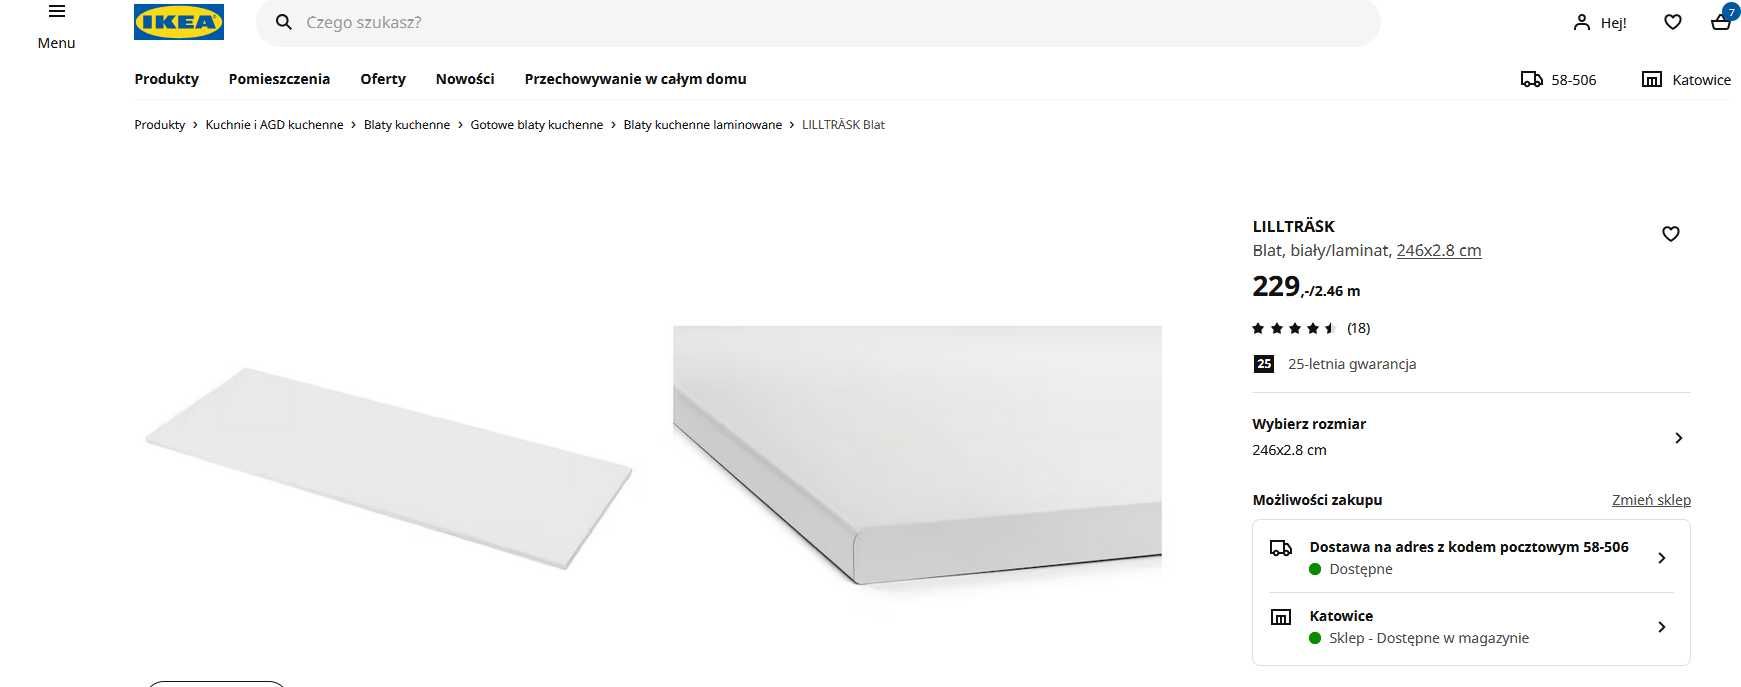 IKEA LILLTRÄSK Blat, biały/laminat, 246x2.8 cm